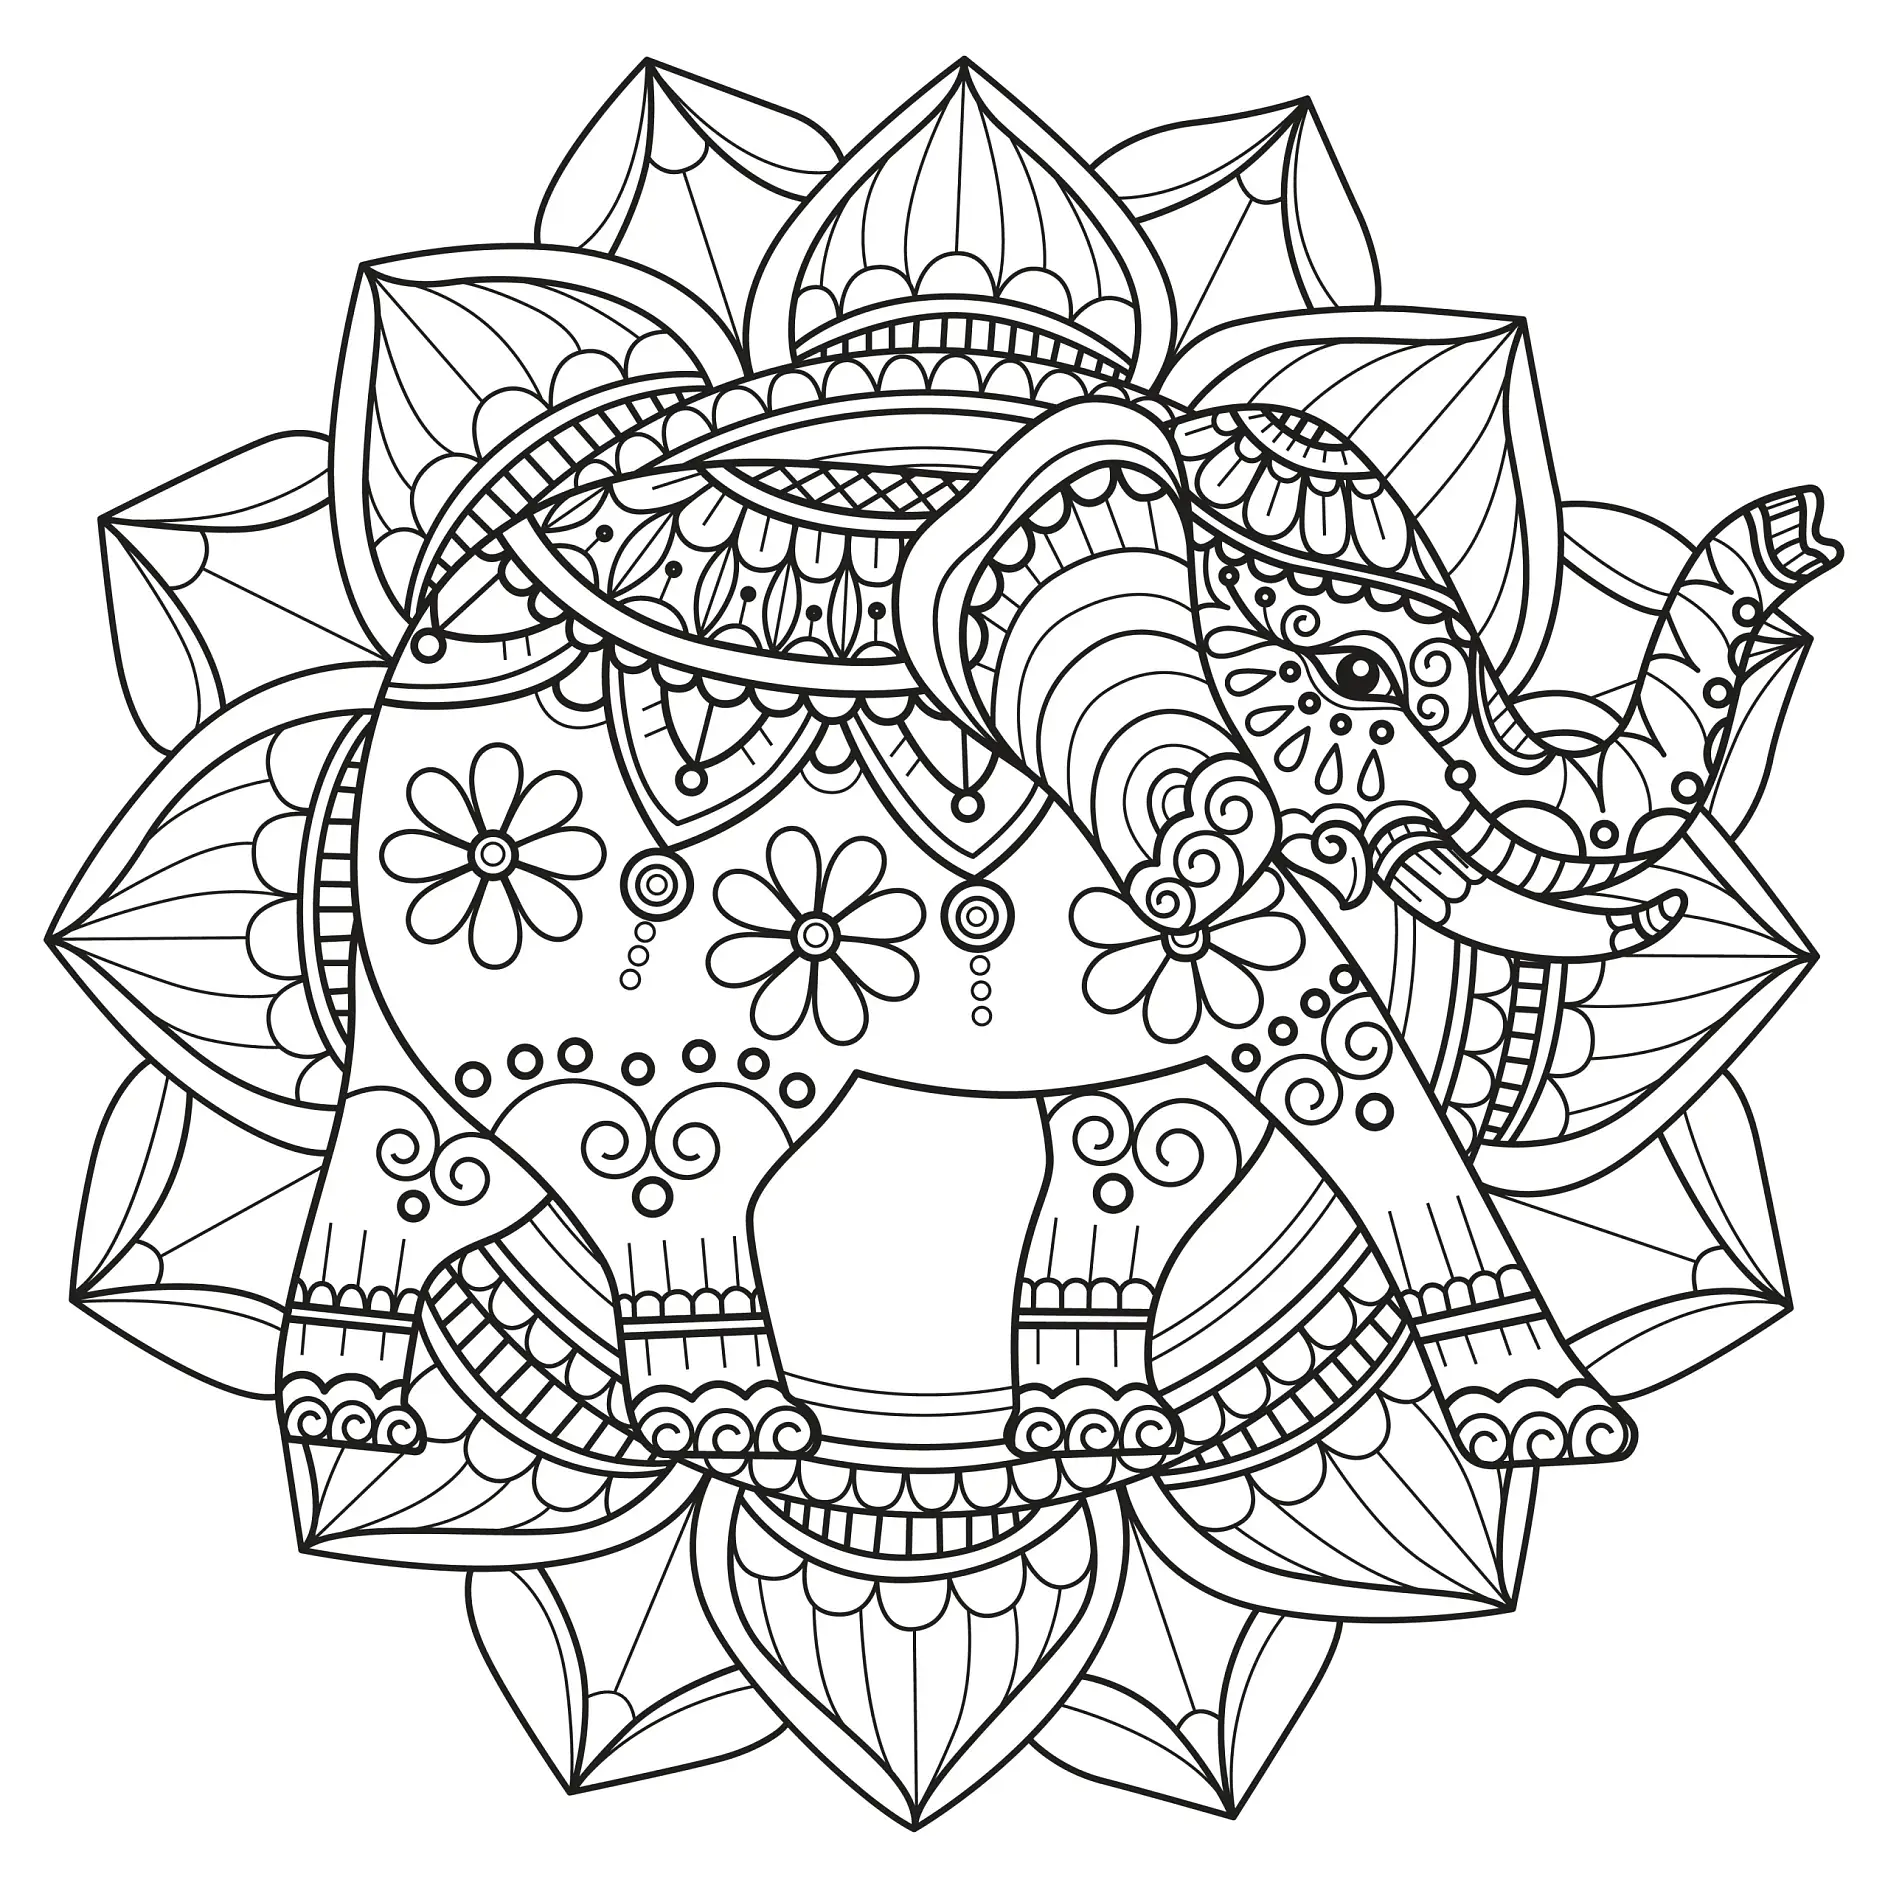 Ausmalbild Mandala mit Elefant und floralen Mustern